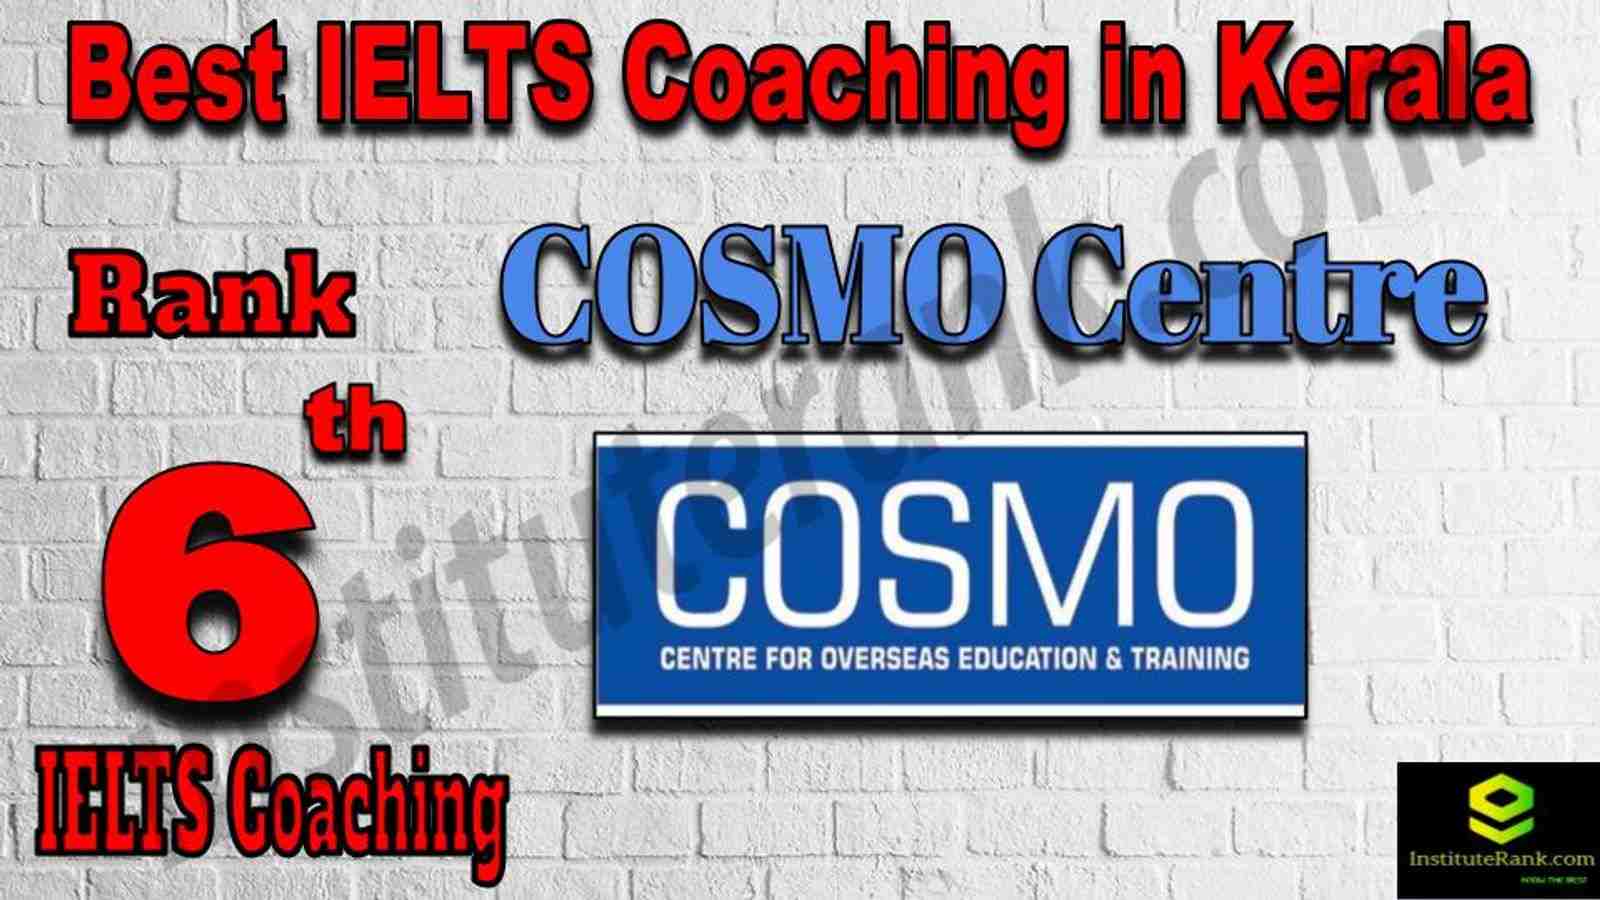 6th Best IELTS Coaching in Kerala